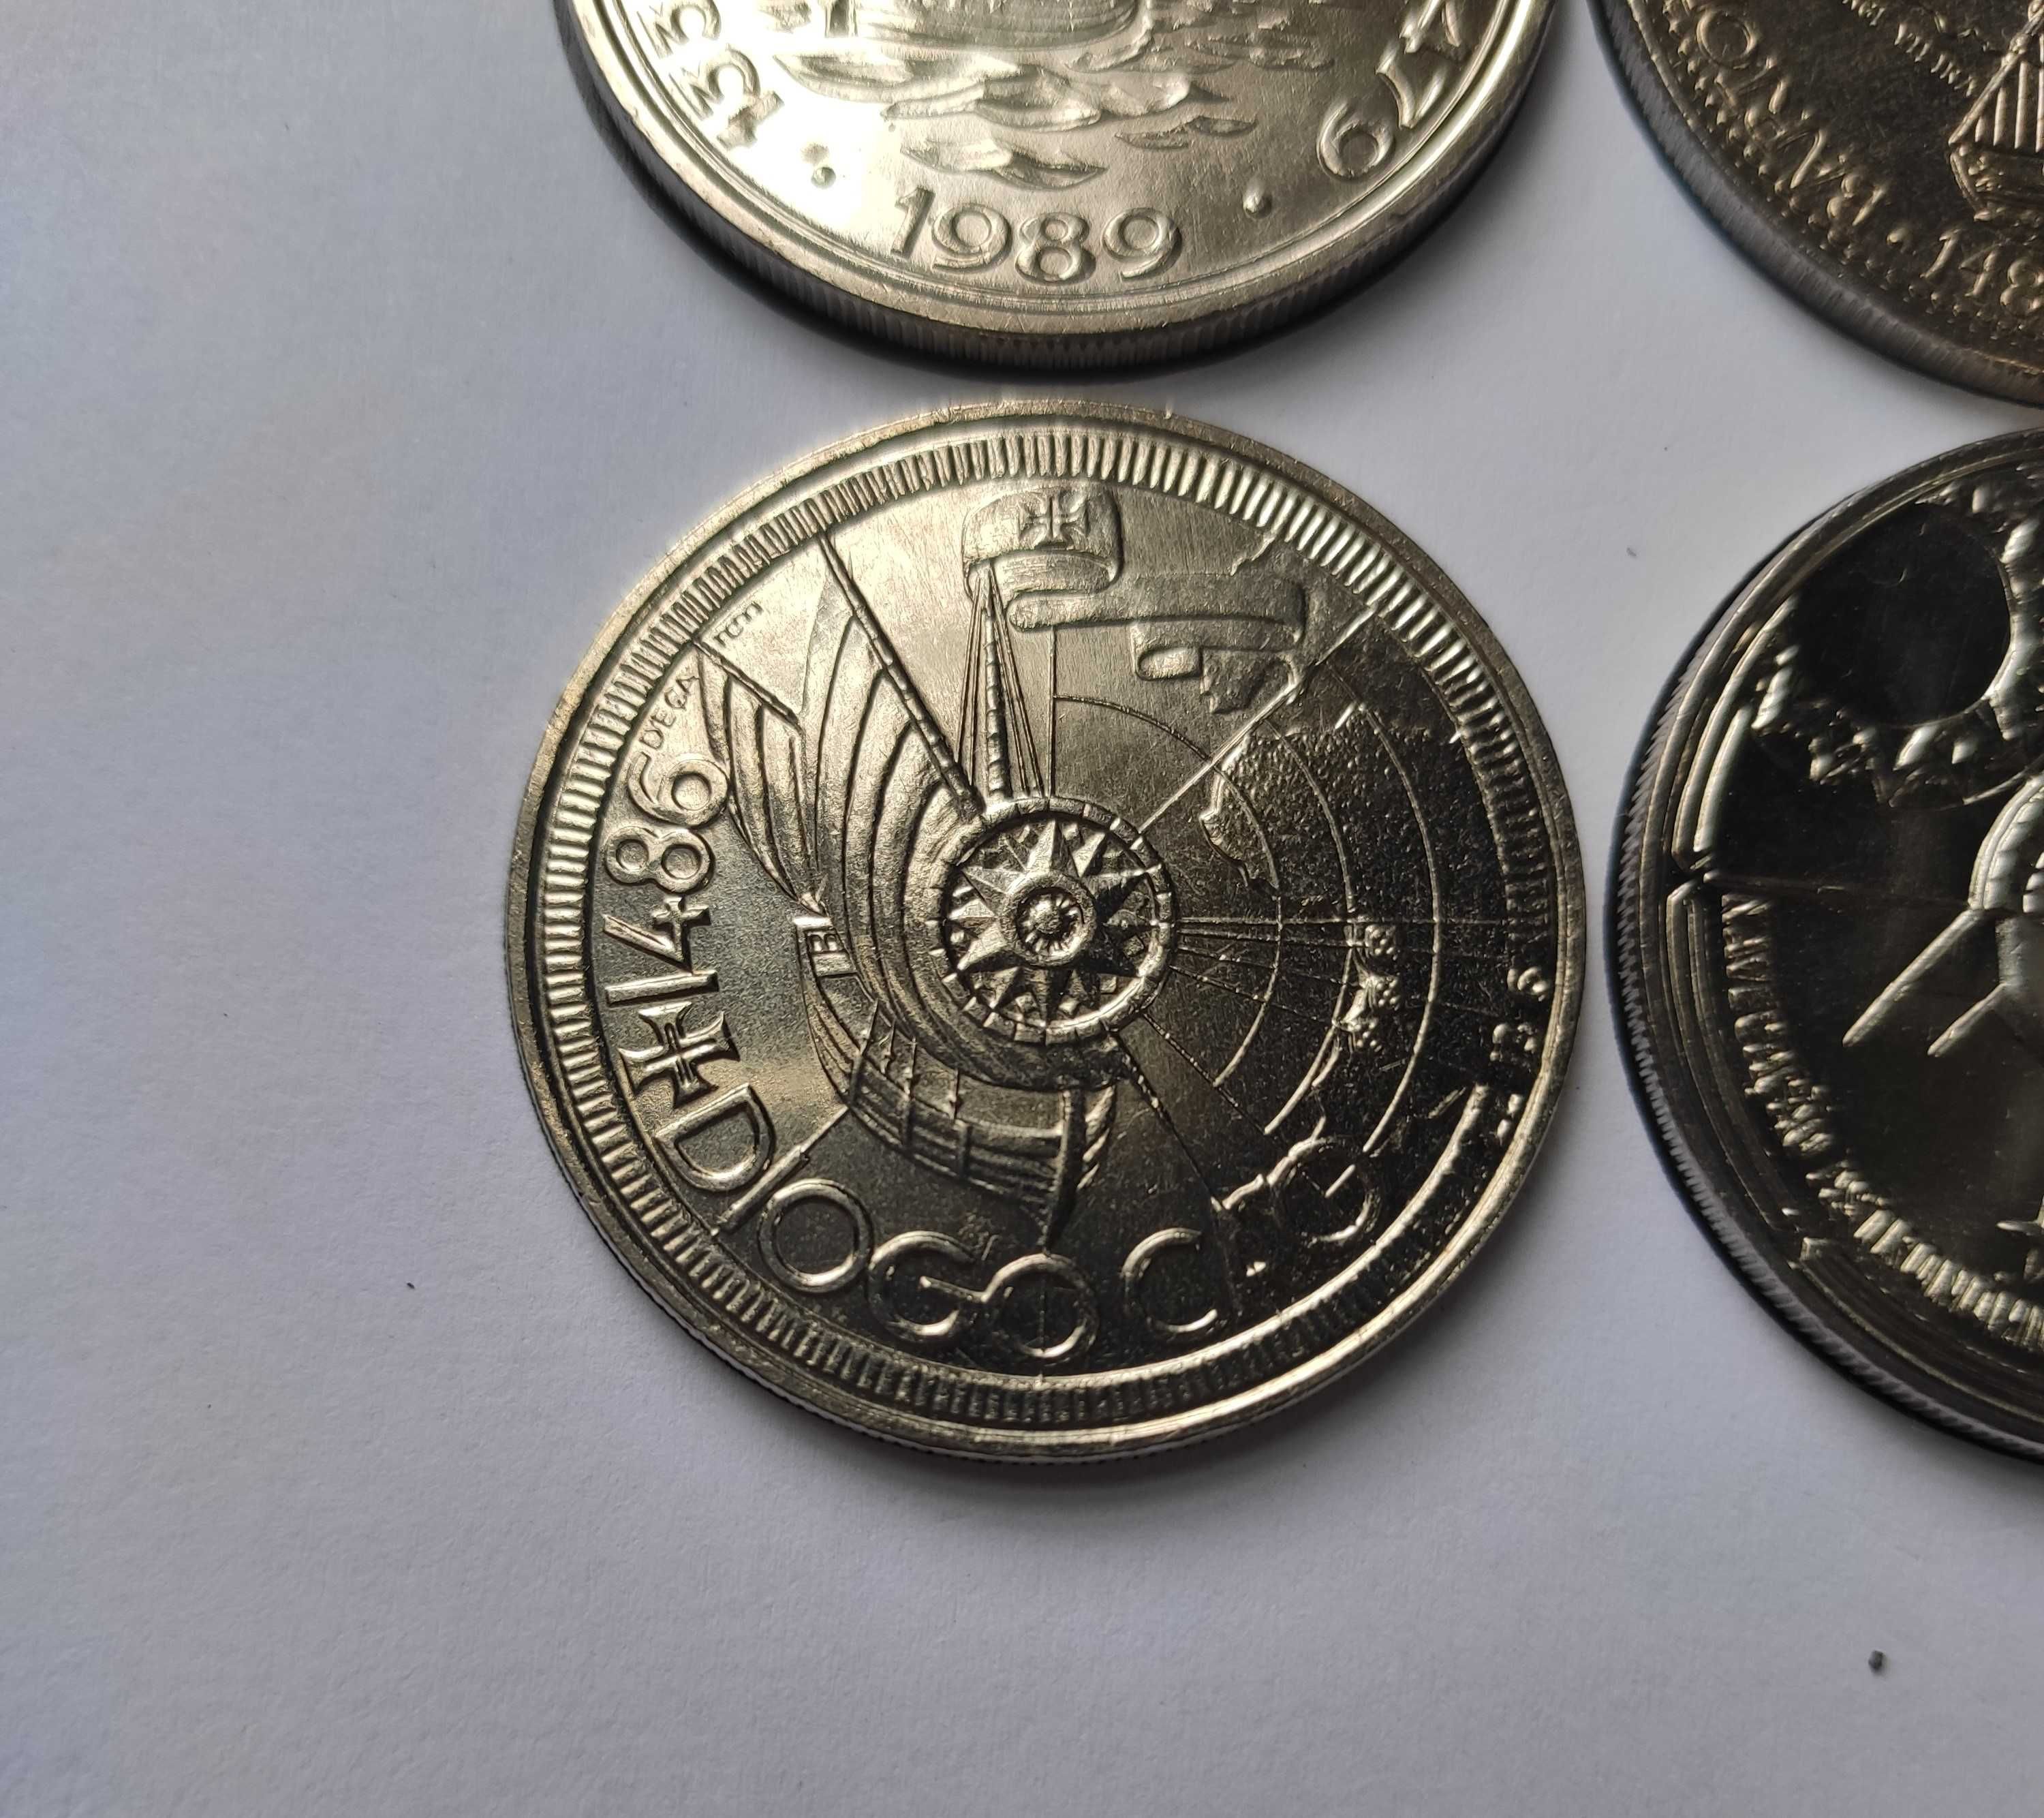 4 moedas de 100 Escudos – Várias (nº3)